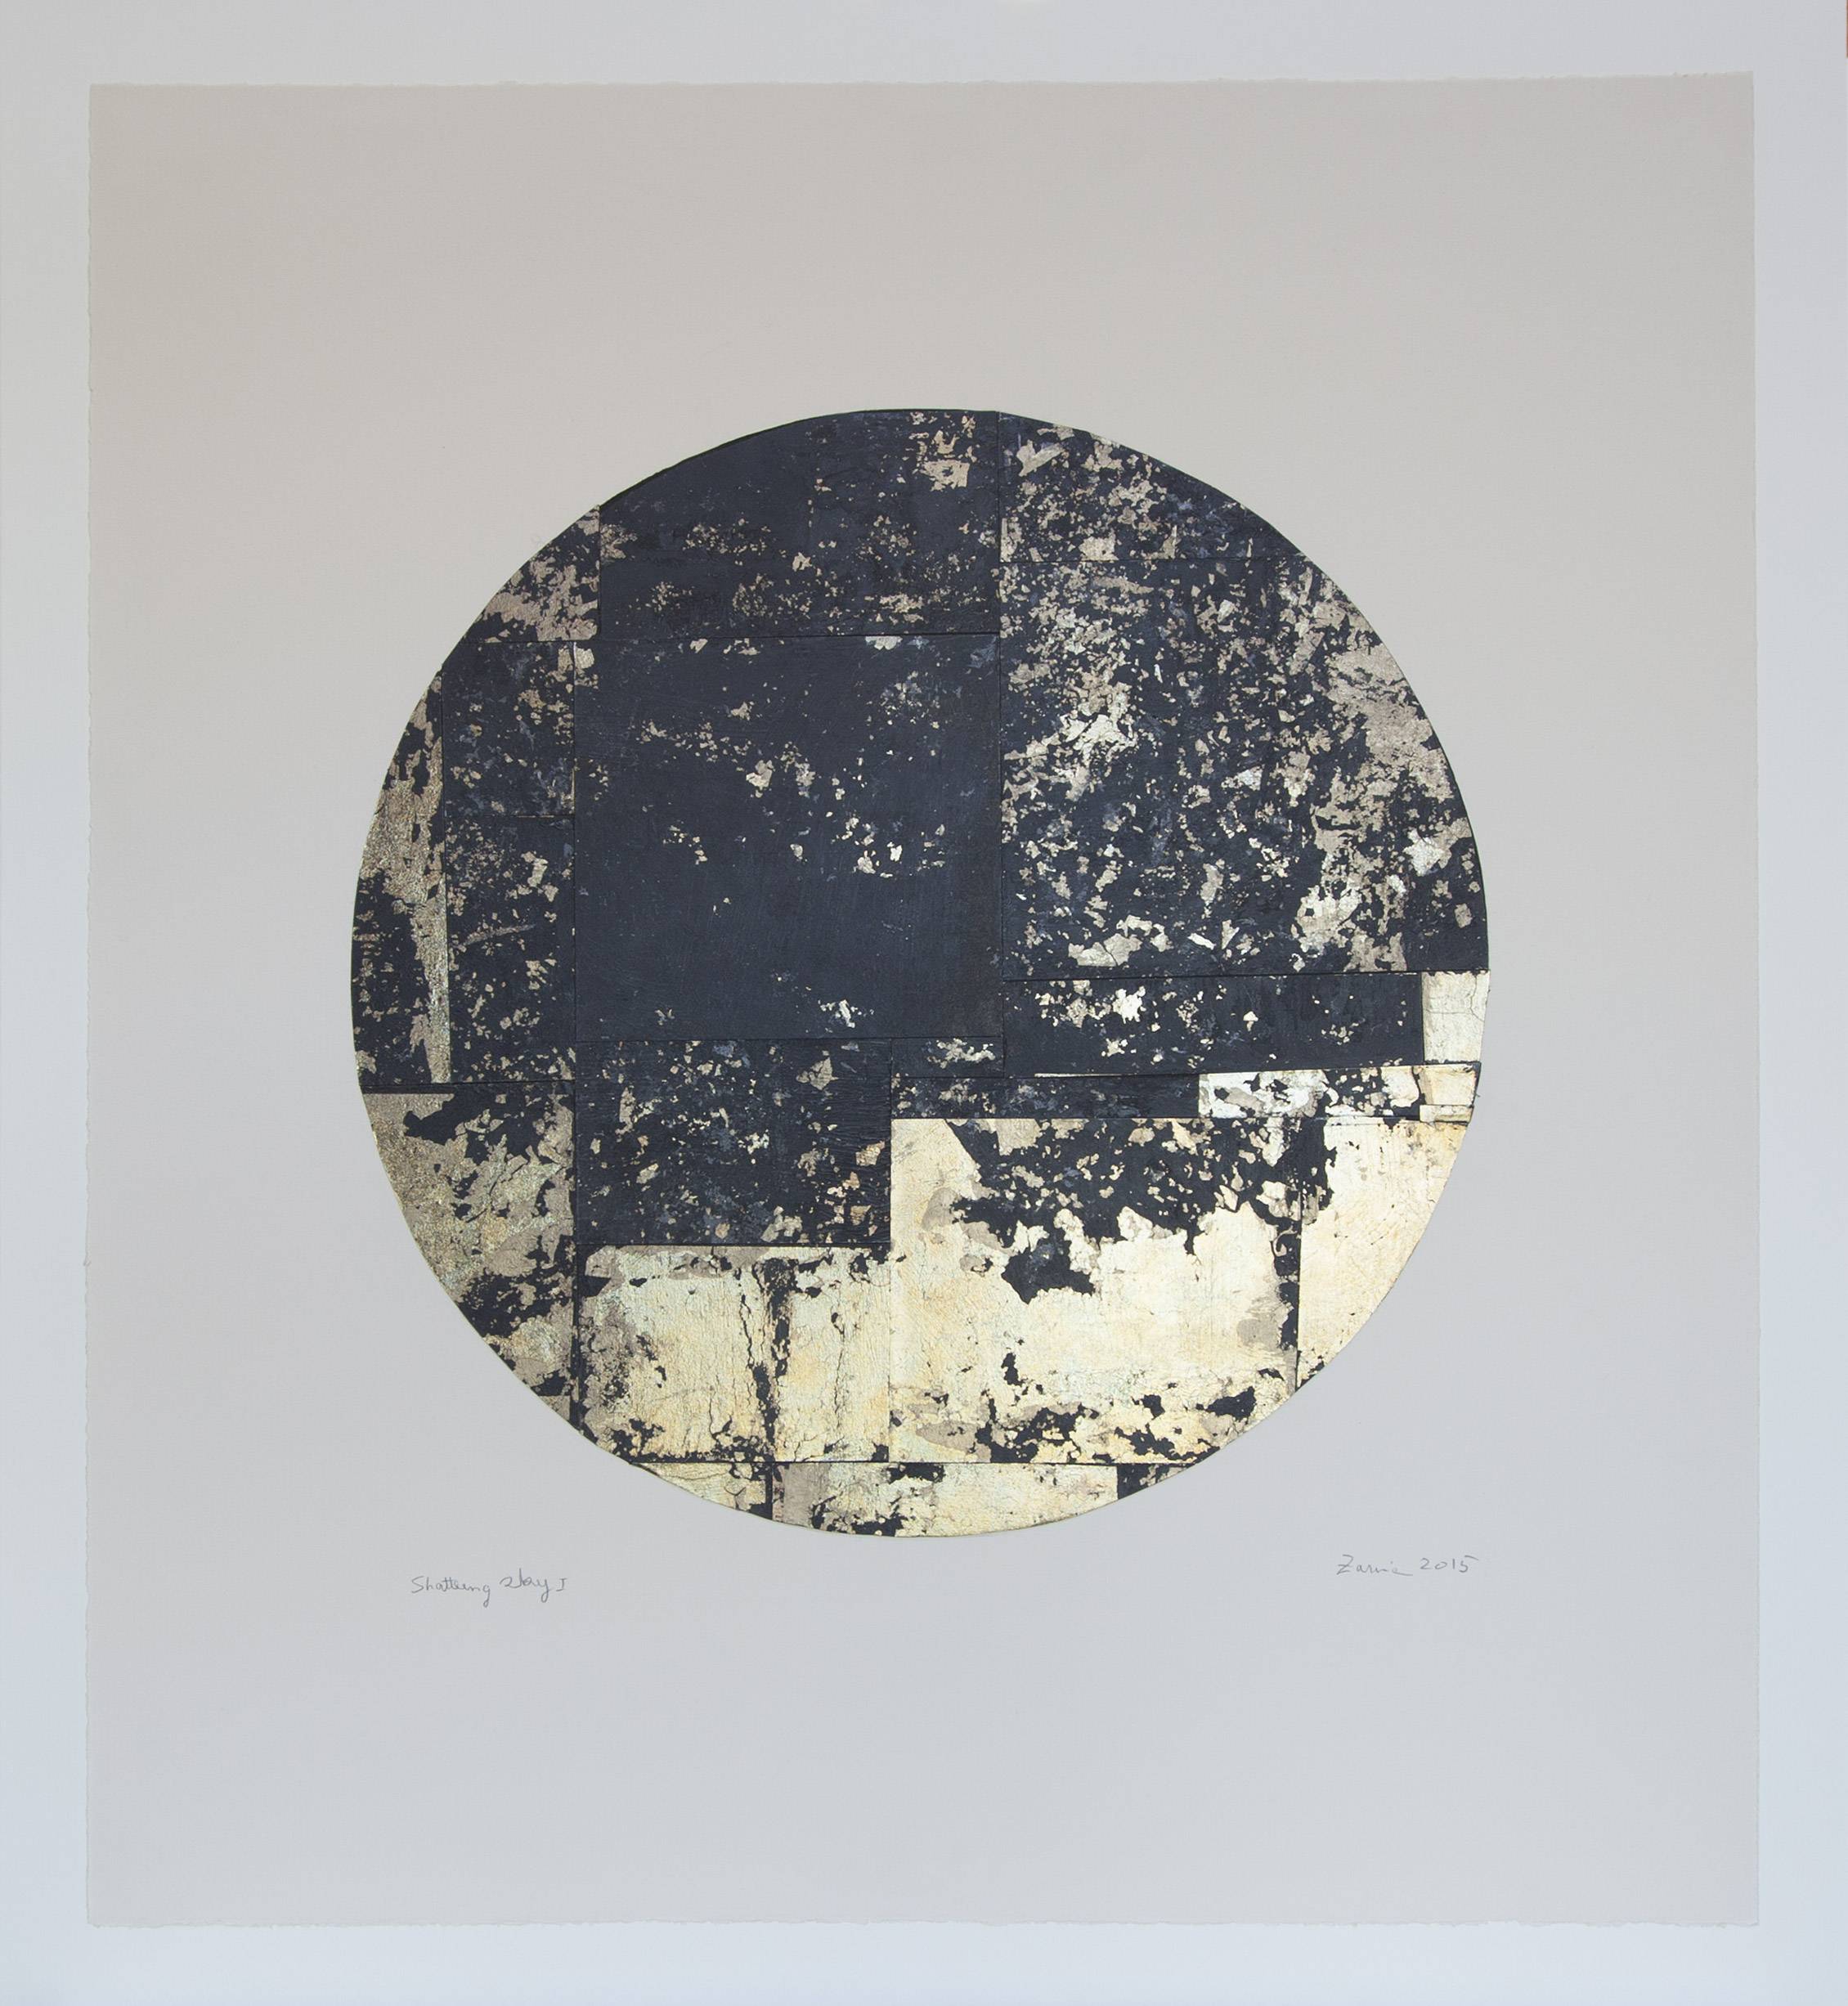 Hashmi Zarina, Shattering Sky I, 2015
Collage de feuille d'étain et papier BFK light teinté à l'encre Sumi
monté sur papier Somerset Antique,
62,2 x 55,8 cm. Courtesy Galerie Jeanne Bucher Jaeger